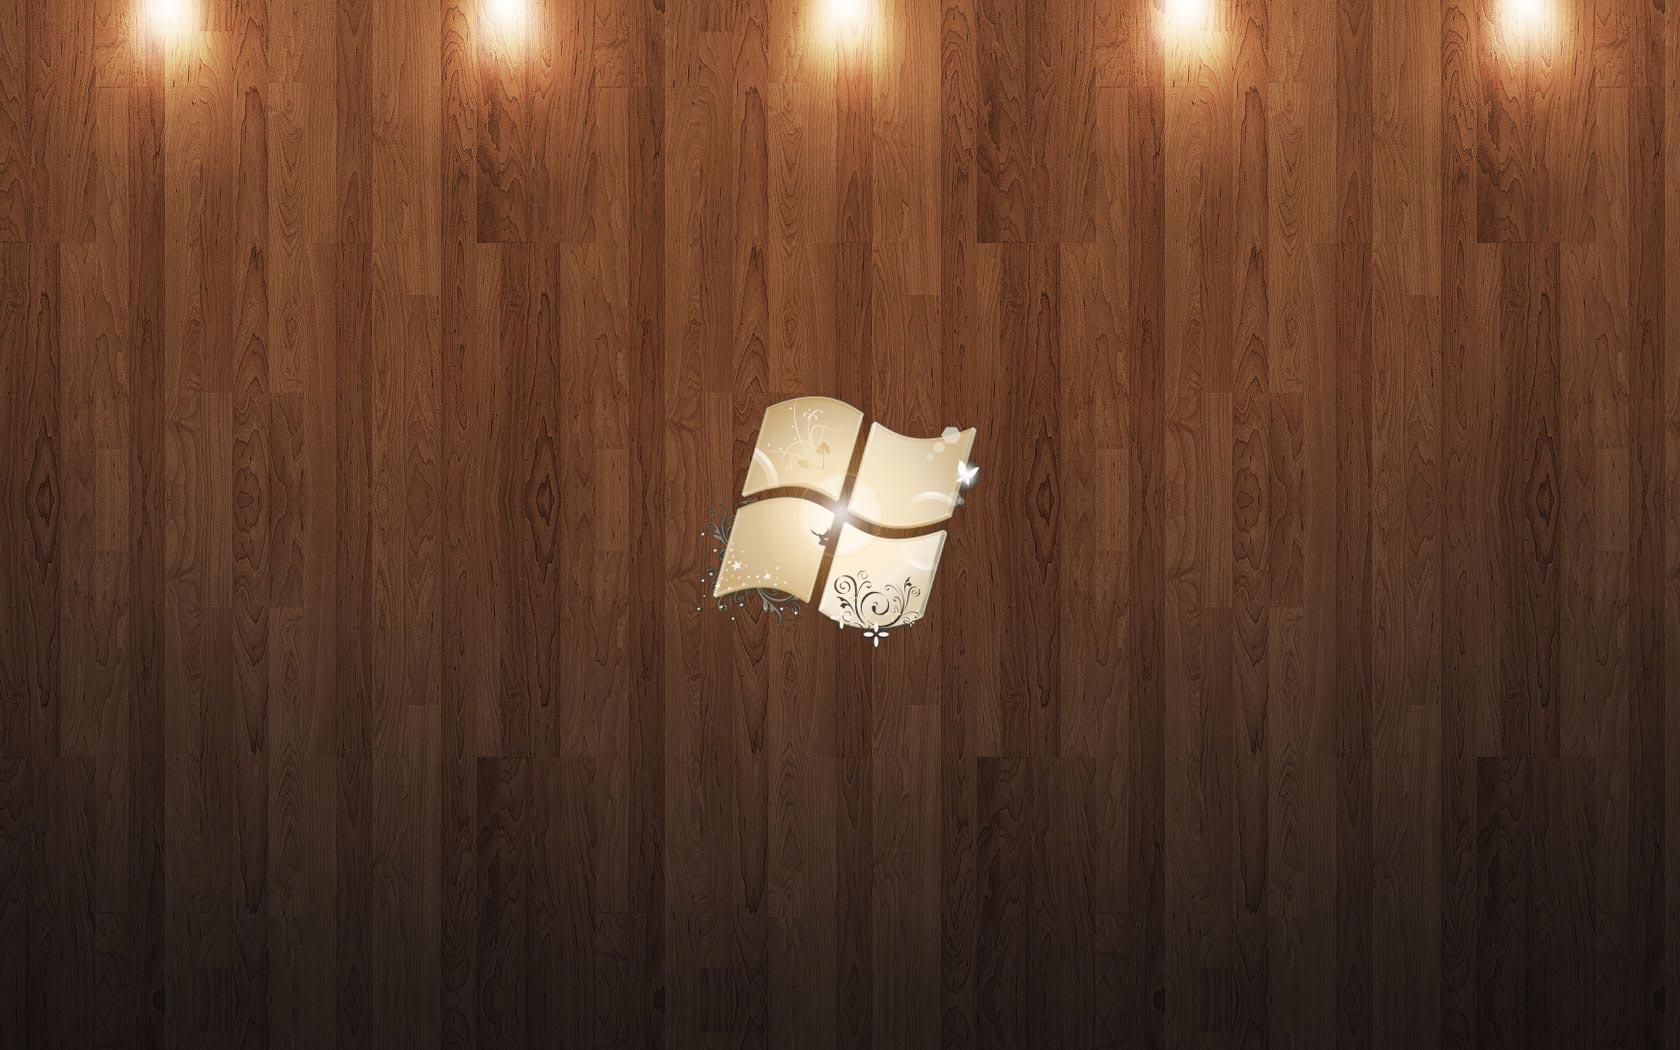 Desktop Wallpaper · Gallery · Computers · Windows Beech wood